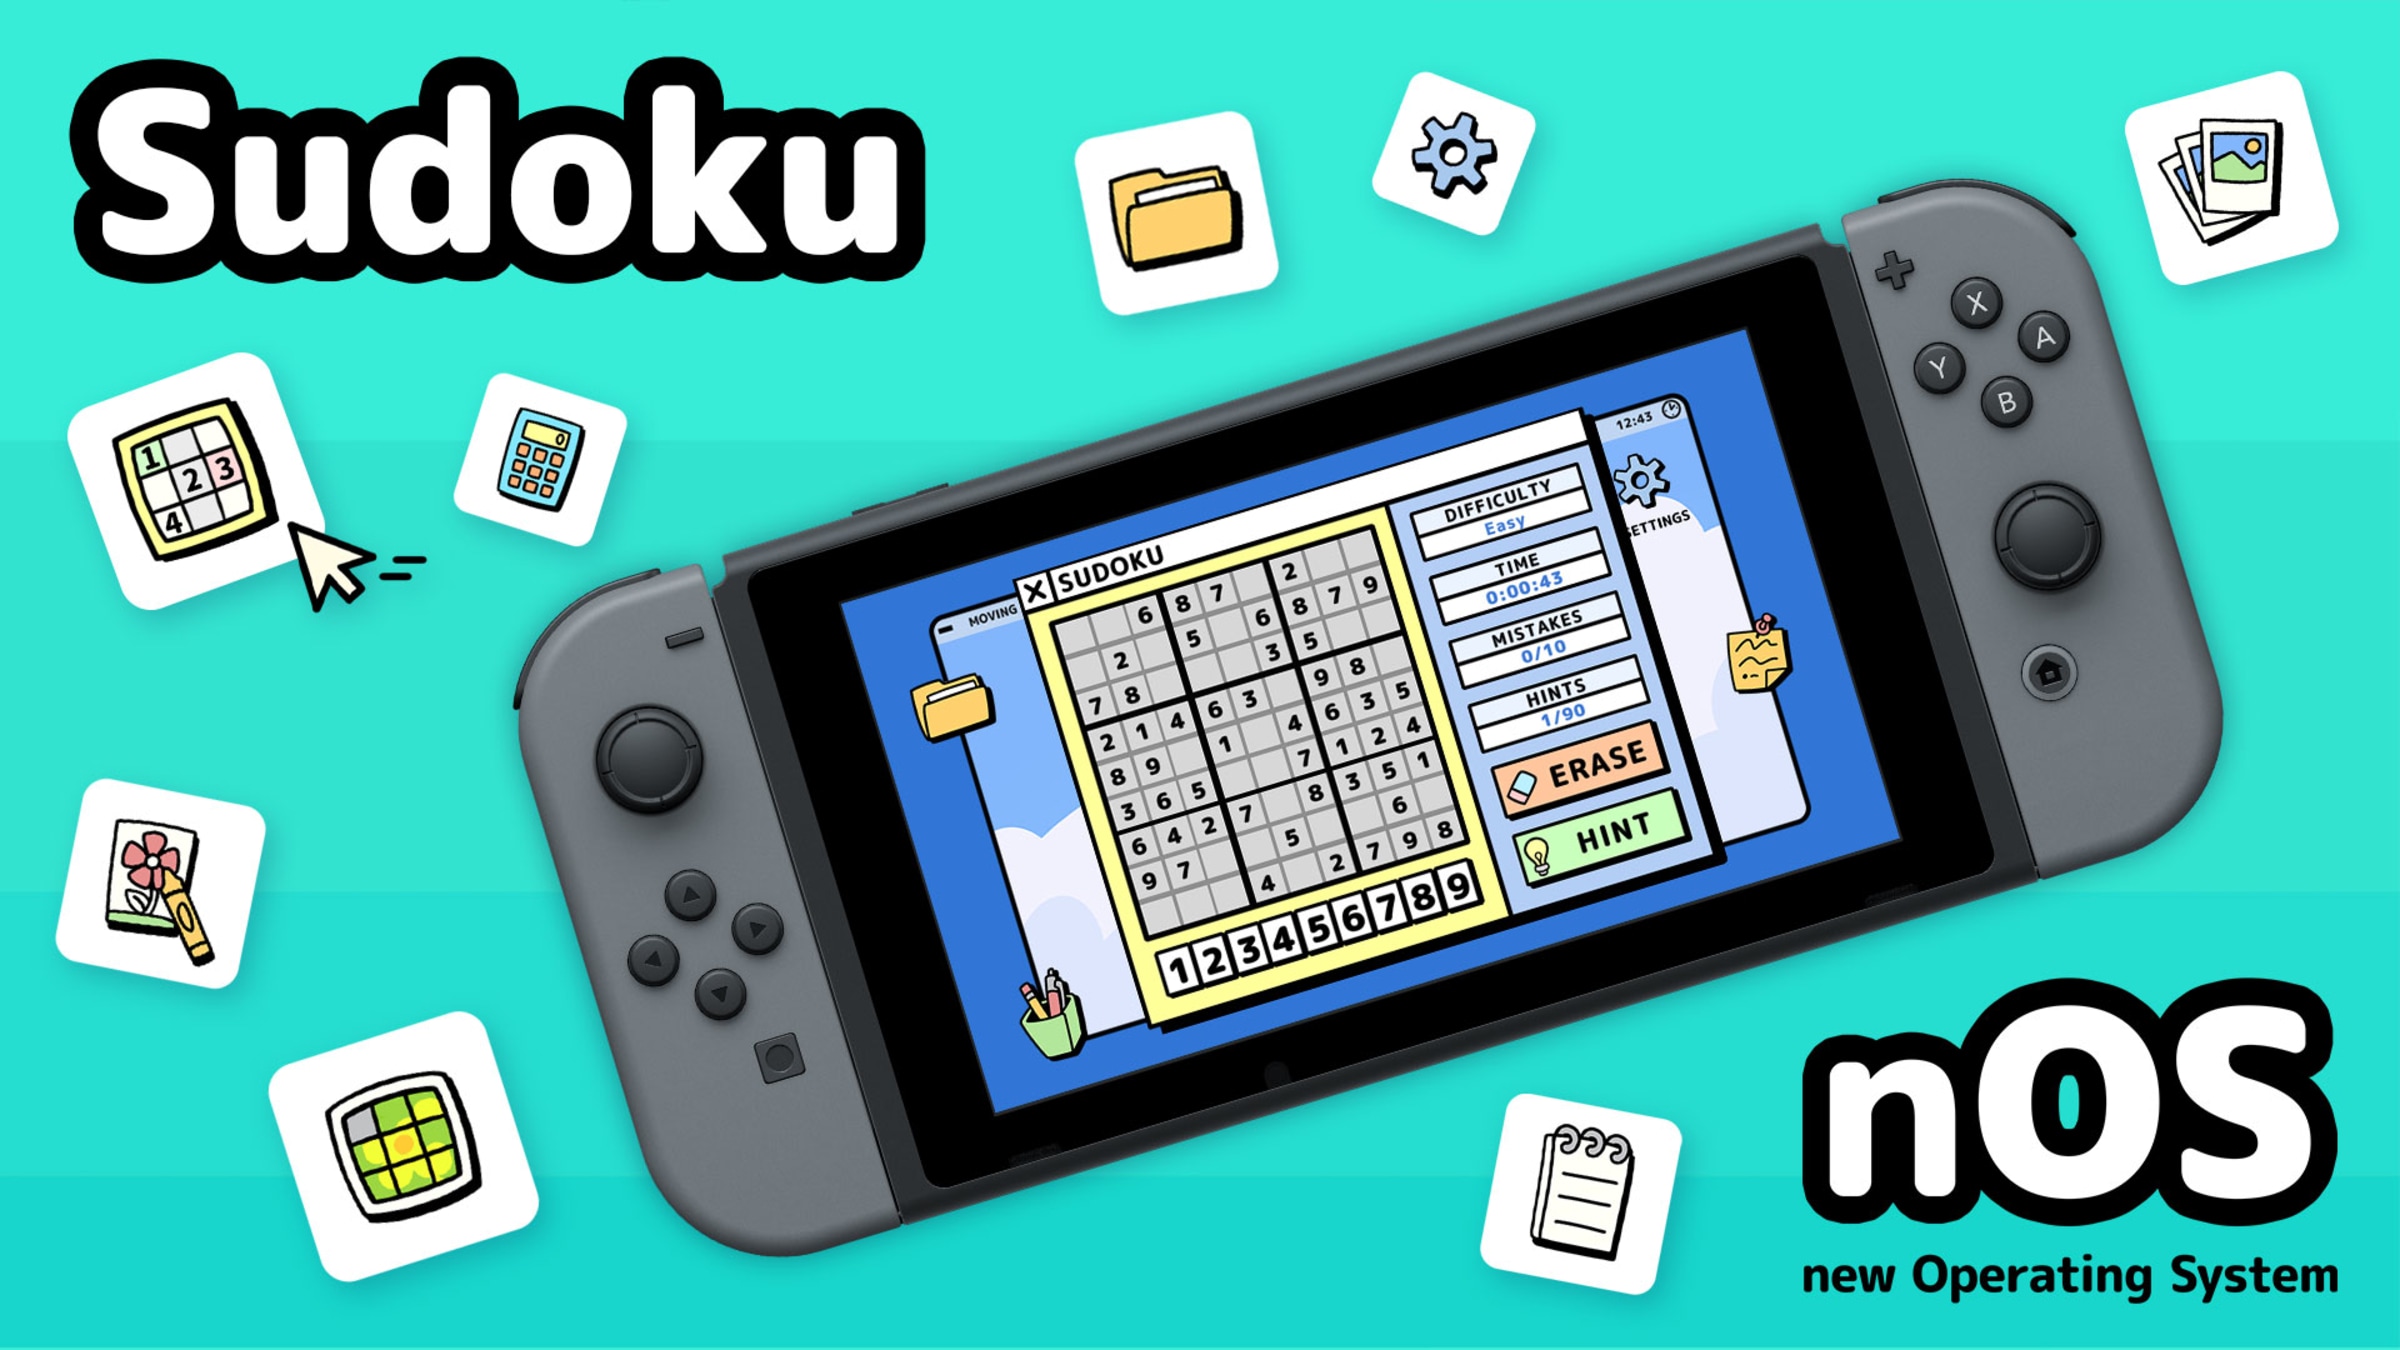 Sudoku Relax, Aplicações de download da Nintendo Switch